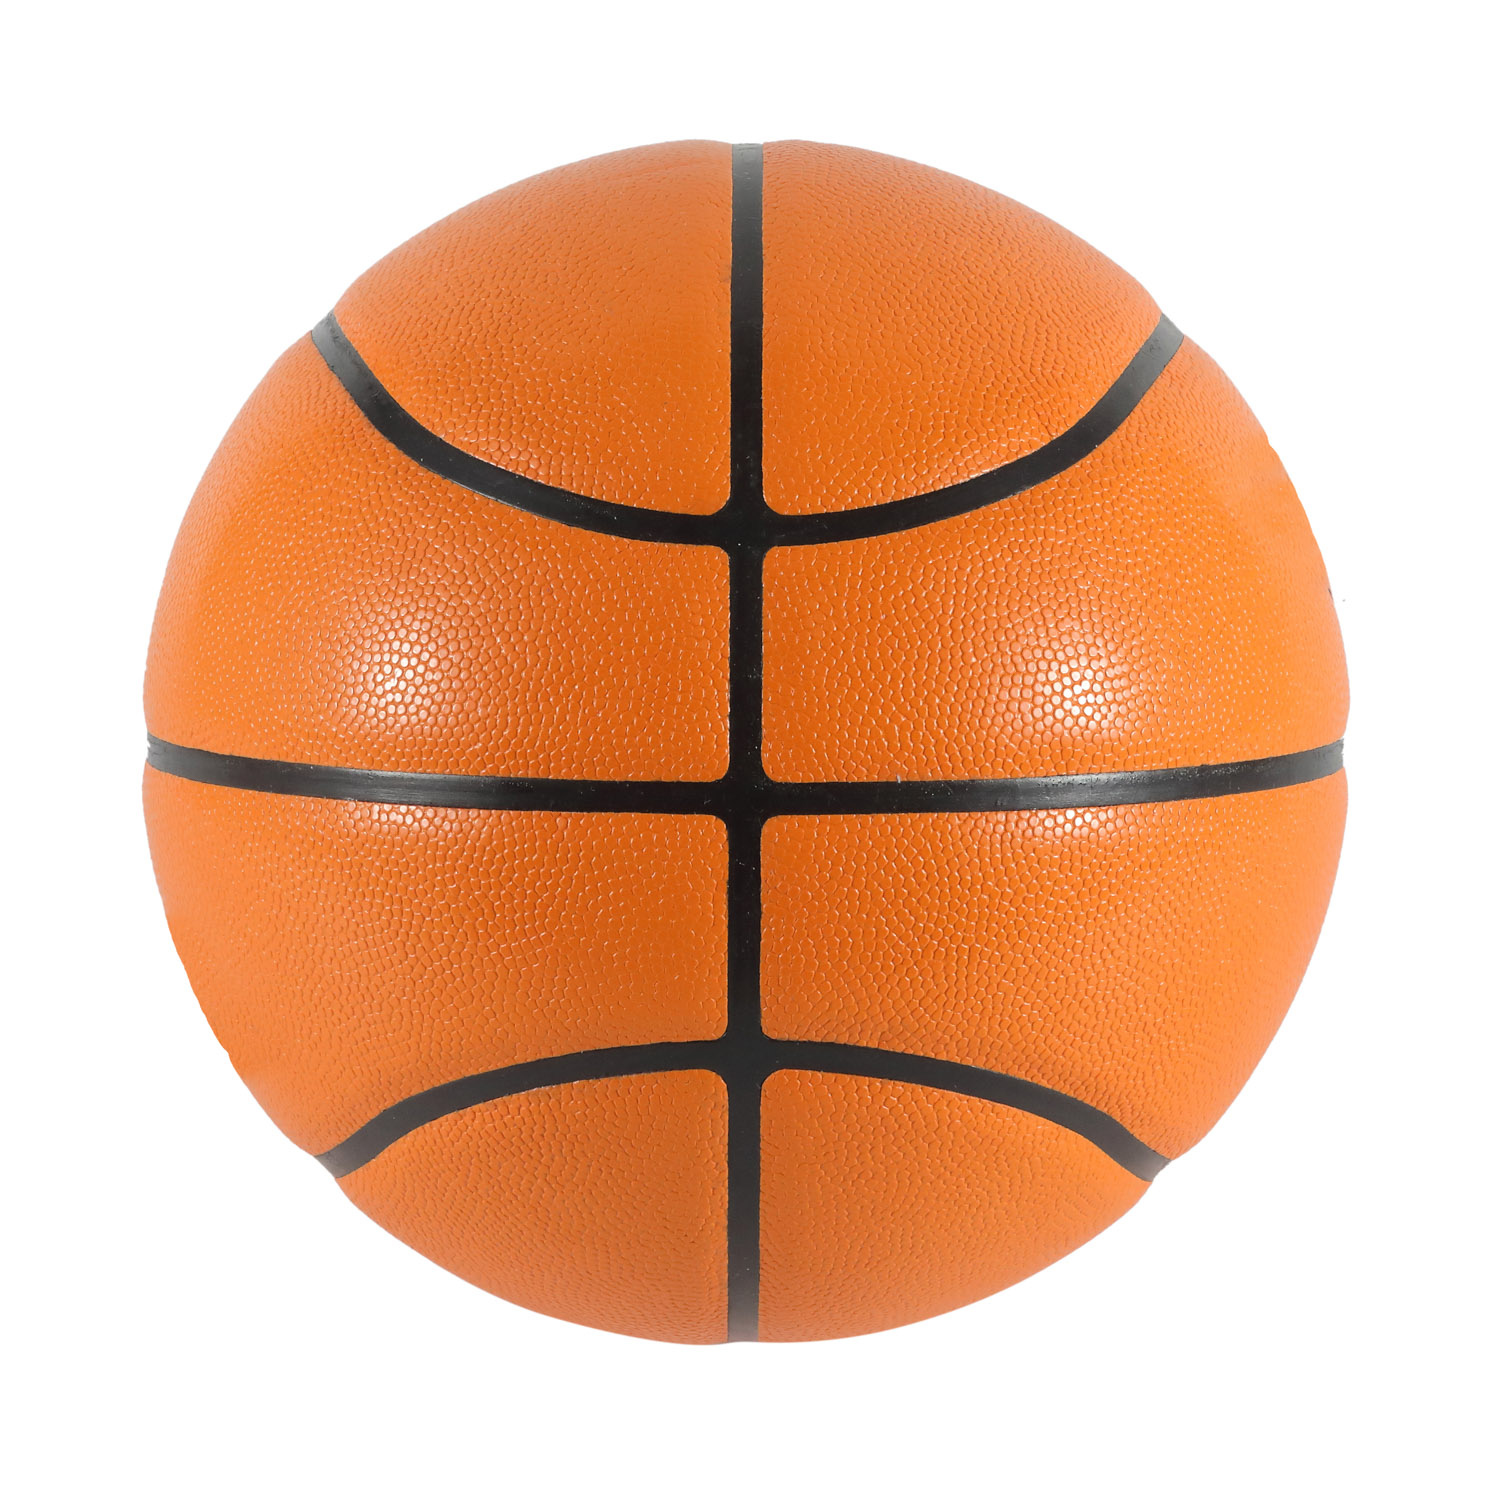 Logotipo personalizado laminado PU de baloncesto de tamaño oficial al aire libre